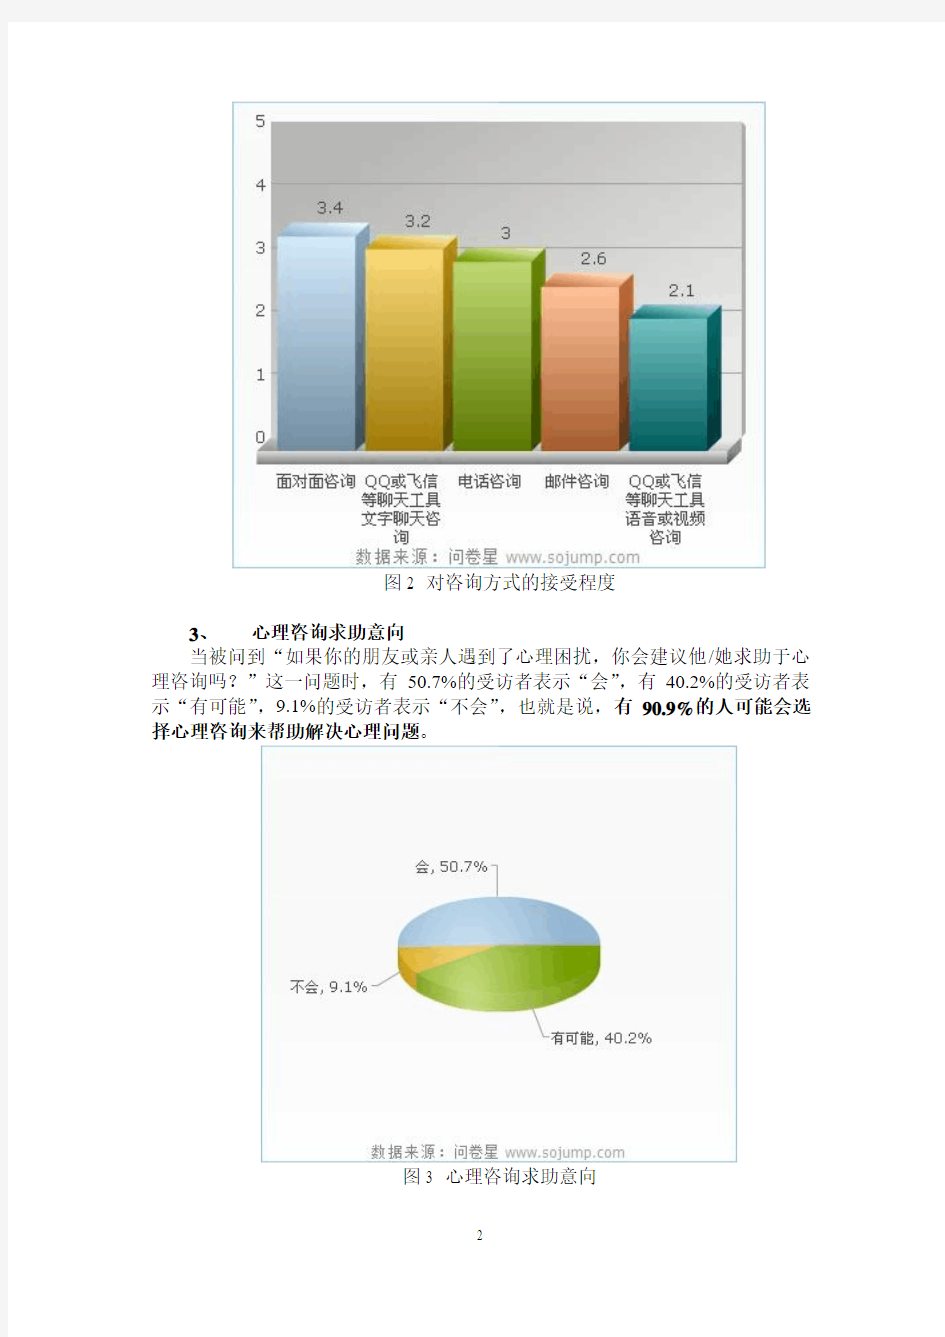 中国在线心理咨询市场调查报告